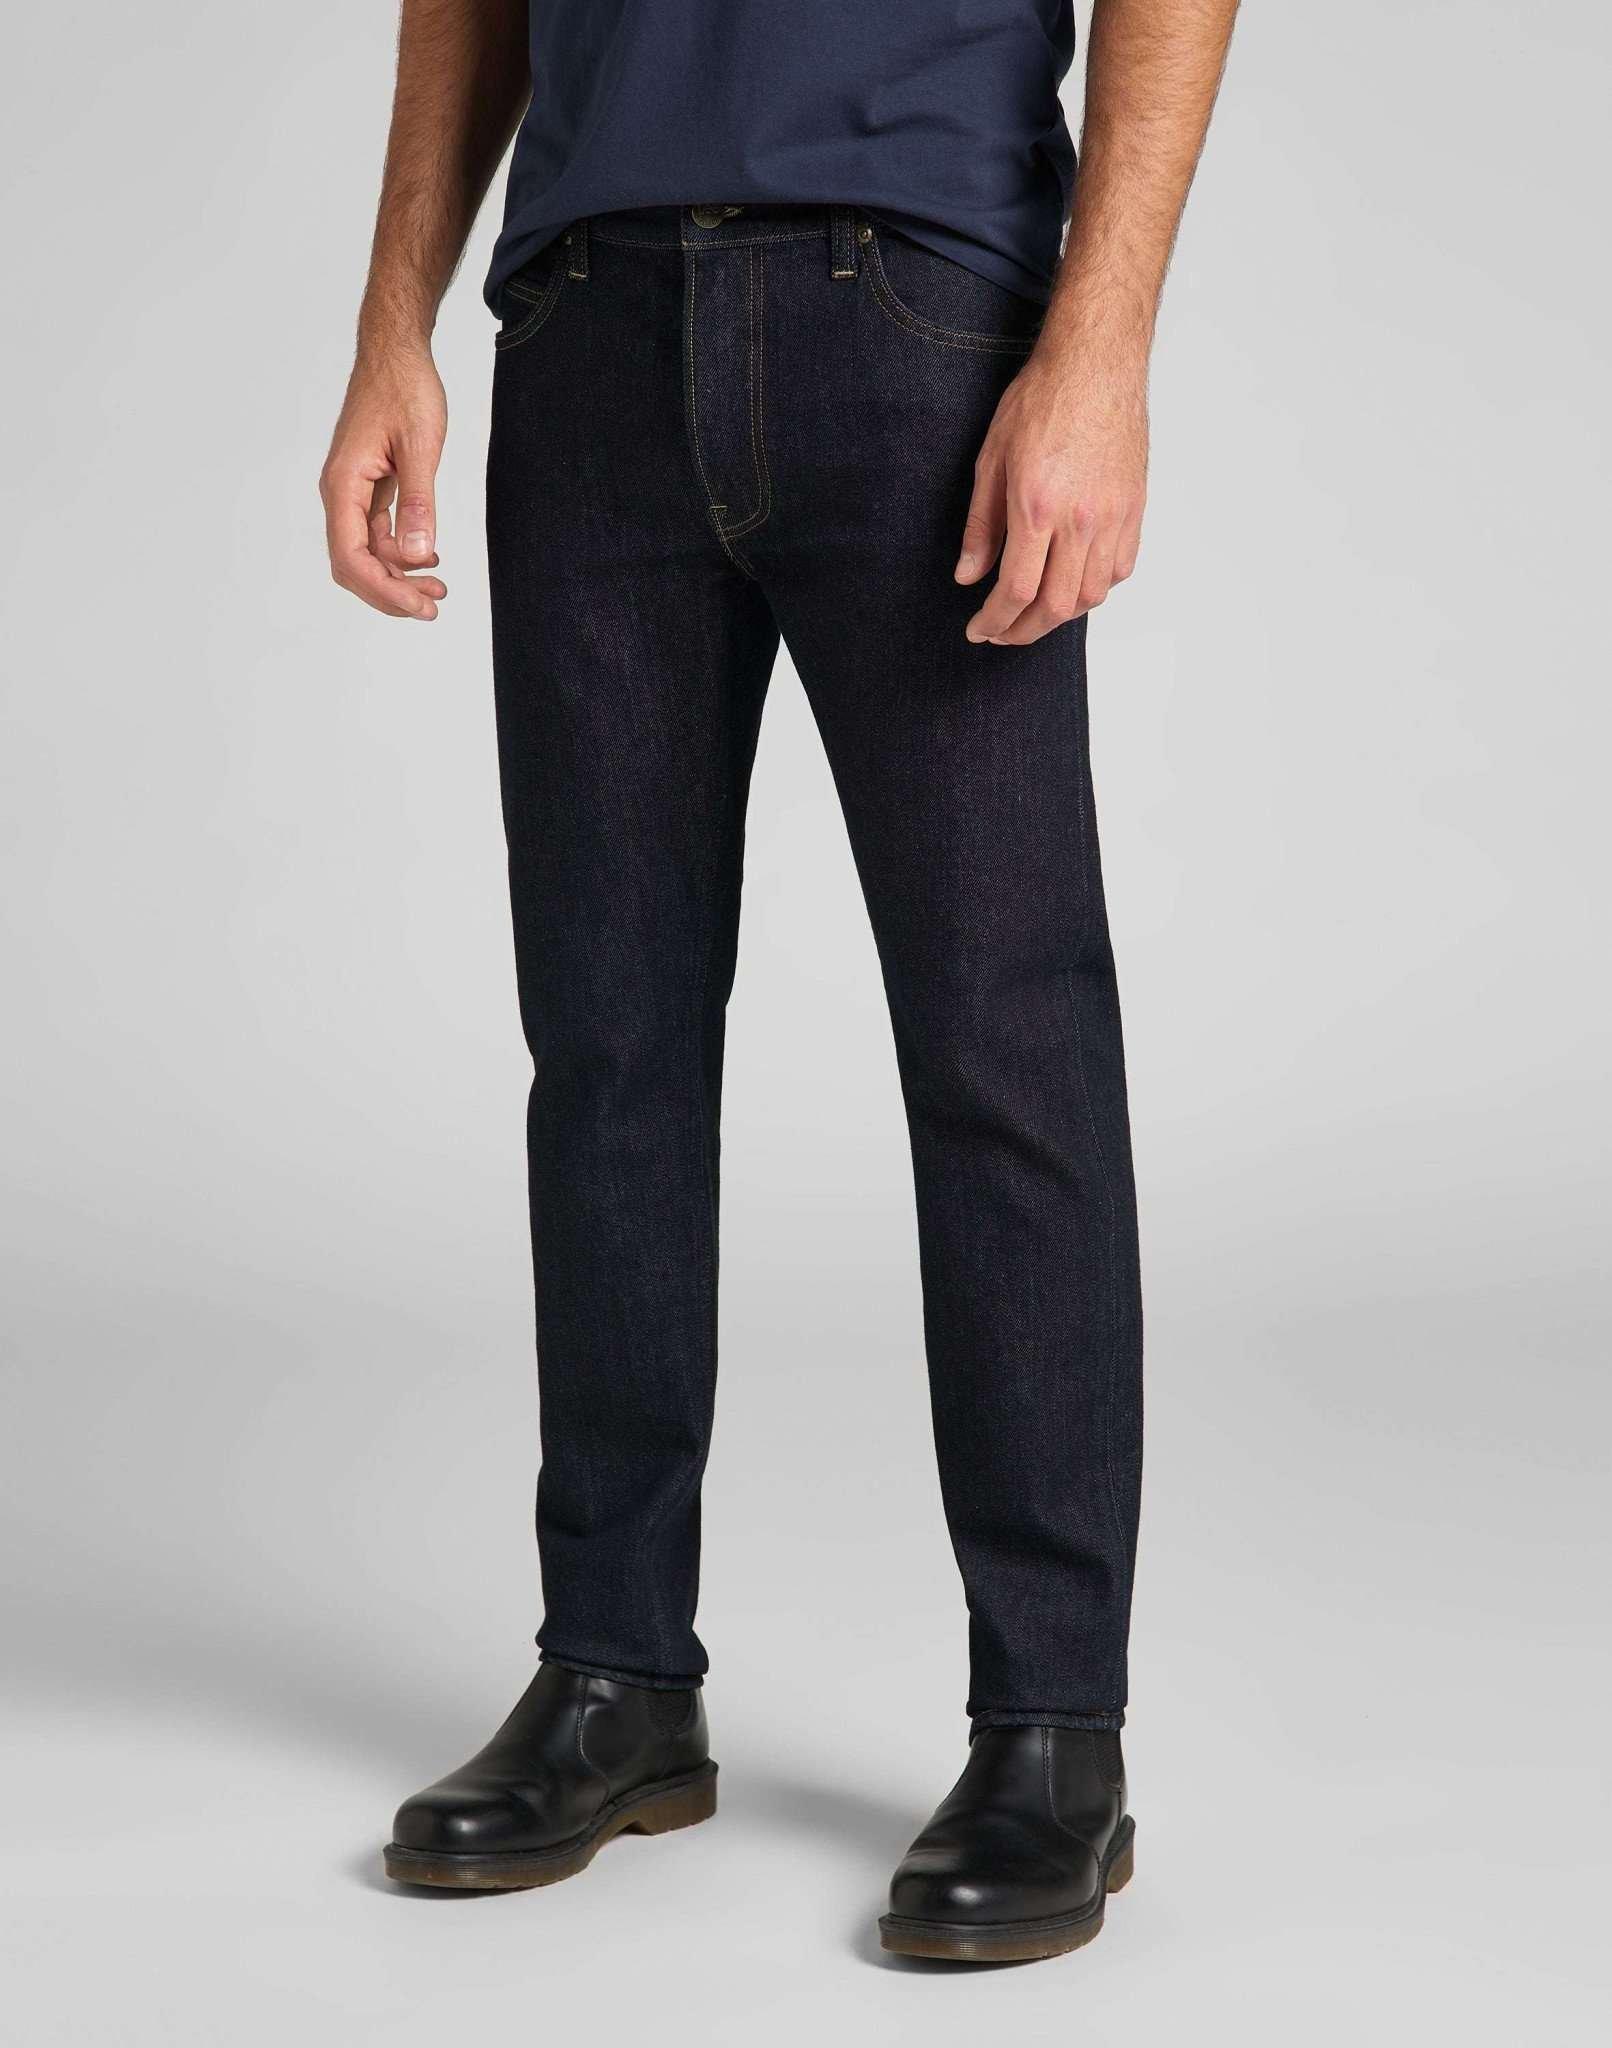 Jeans Slim Fit Rider Herren Blau Denim L32/W30 von Lee